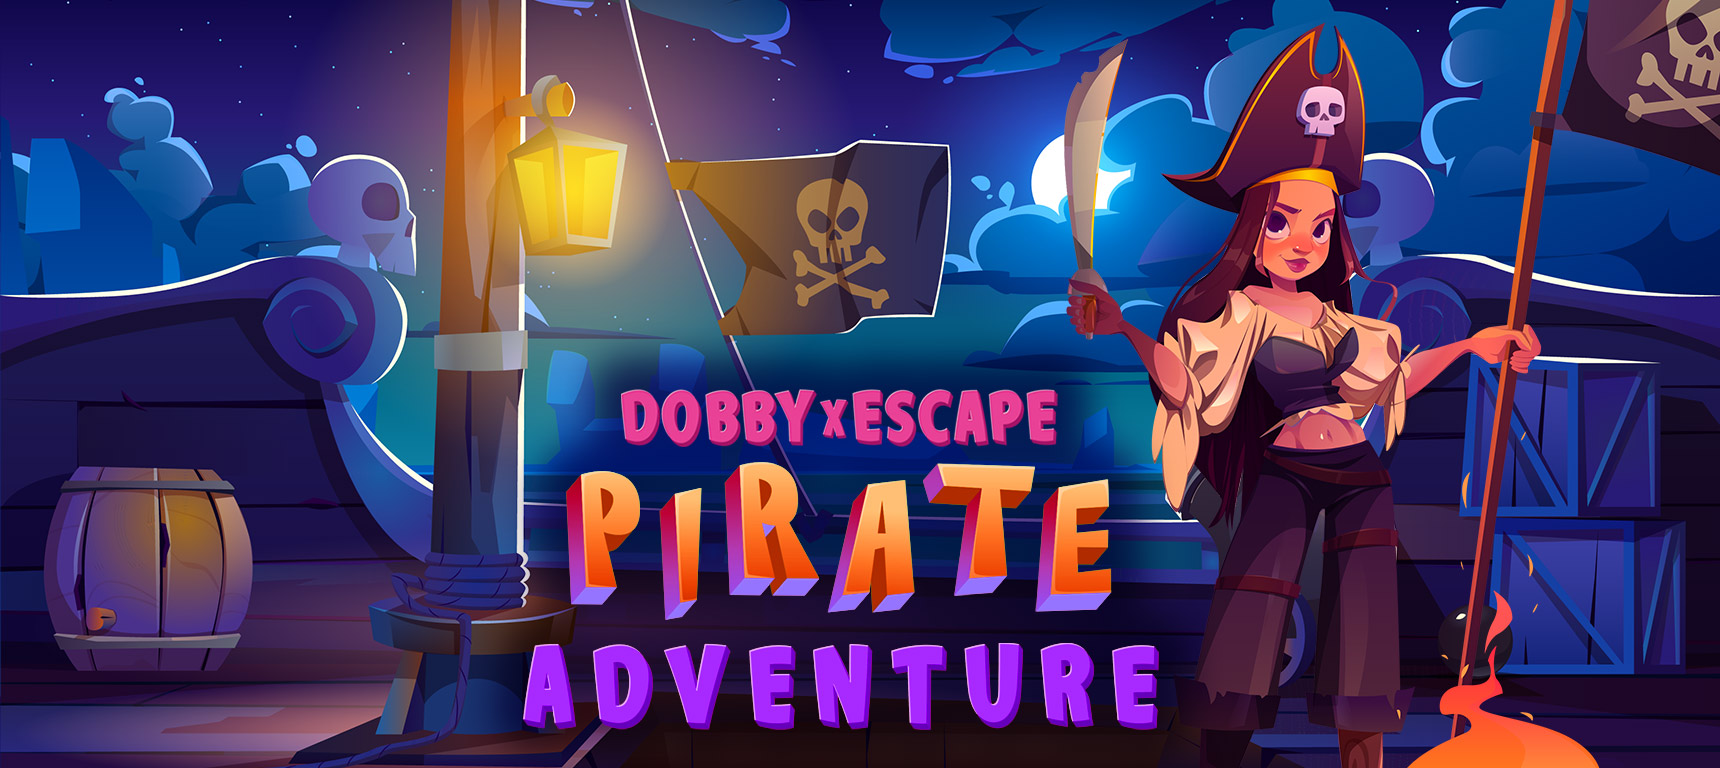 DobbyxEscape: Pirate Adventure